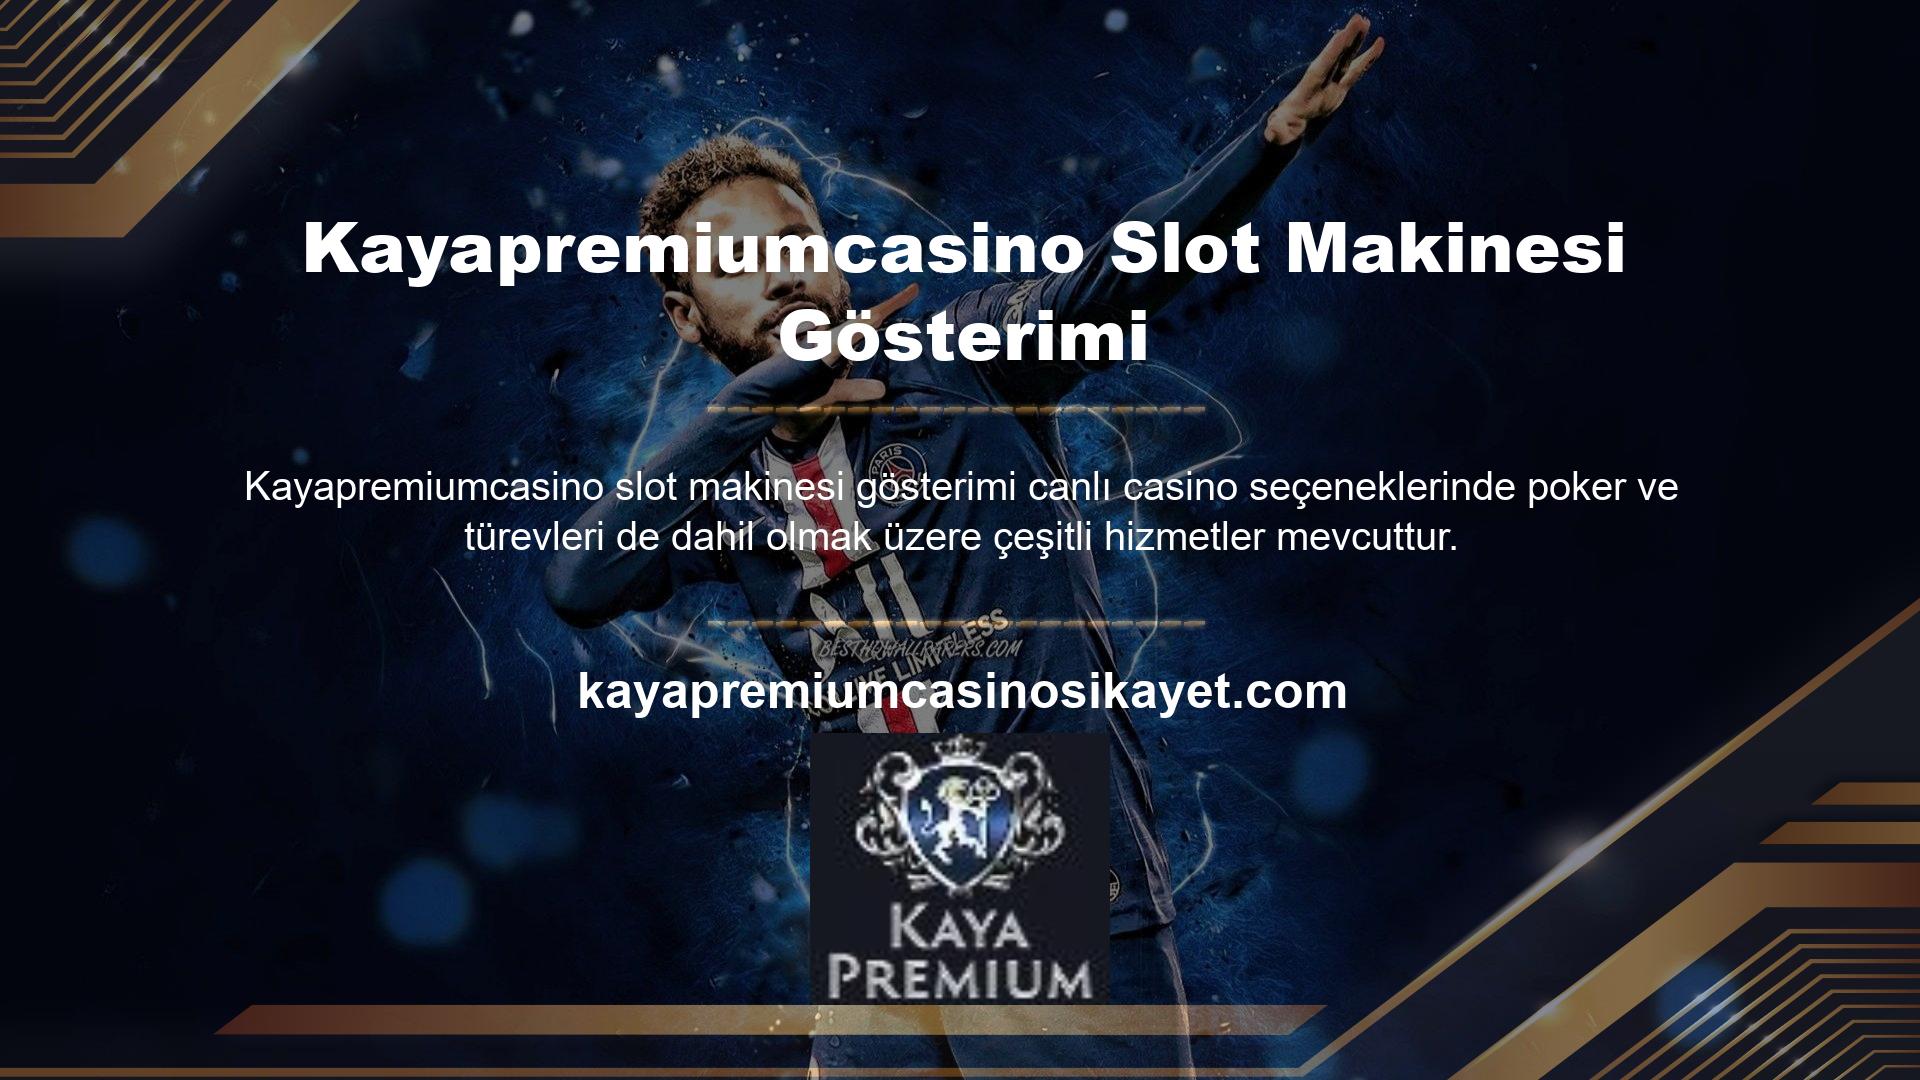 Kayapremiumcasino Casinoda Video Poker en popüler oyun türlerinden biridir